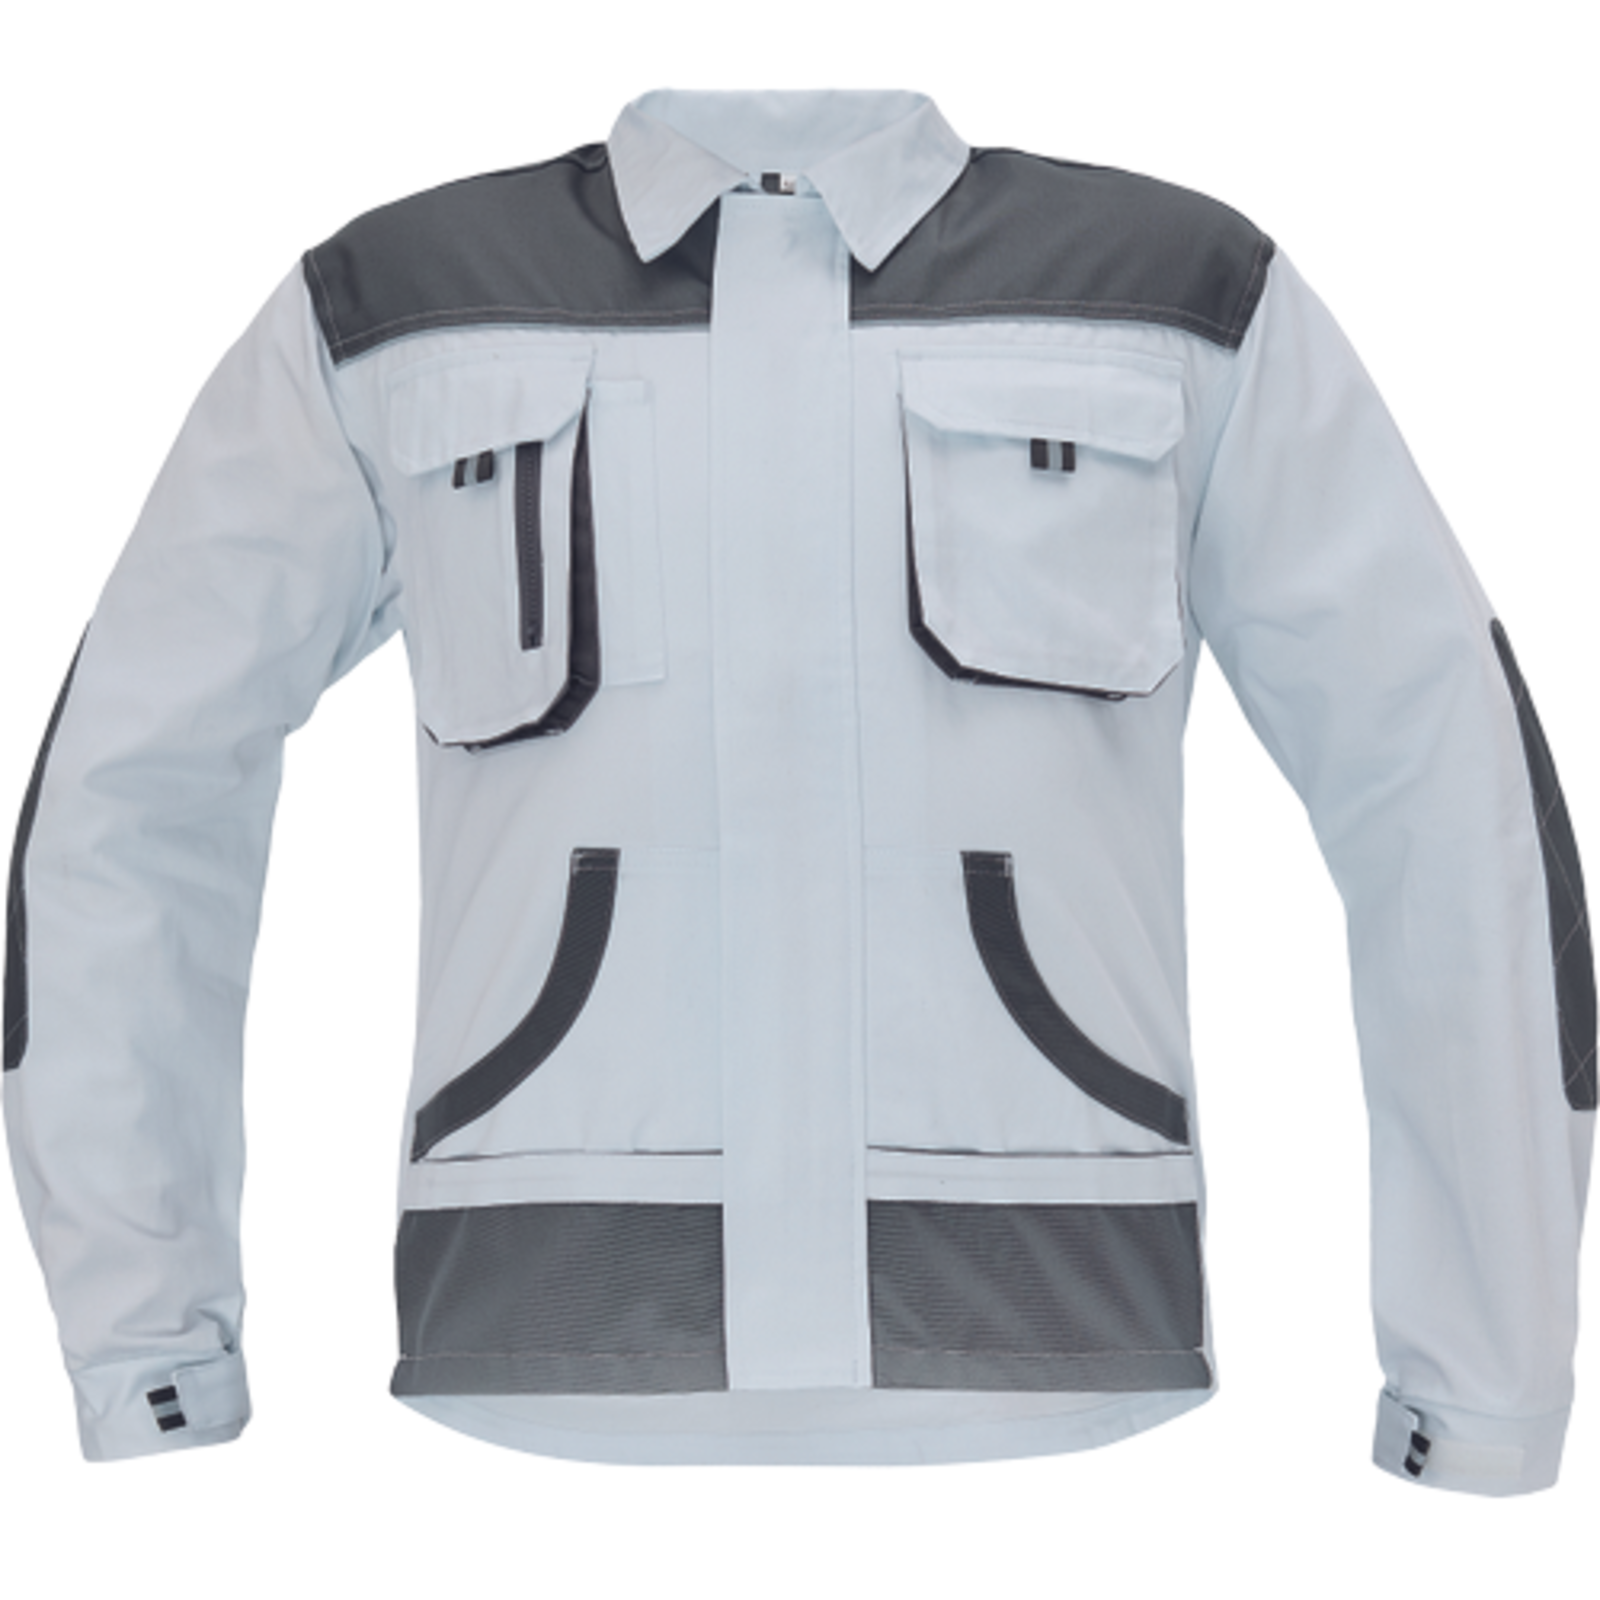 Odolná pracovná bunda Cerva FF Hans - veľkosť: 56, farba: biela/sivá